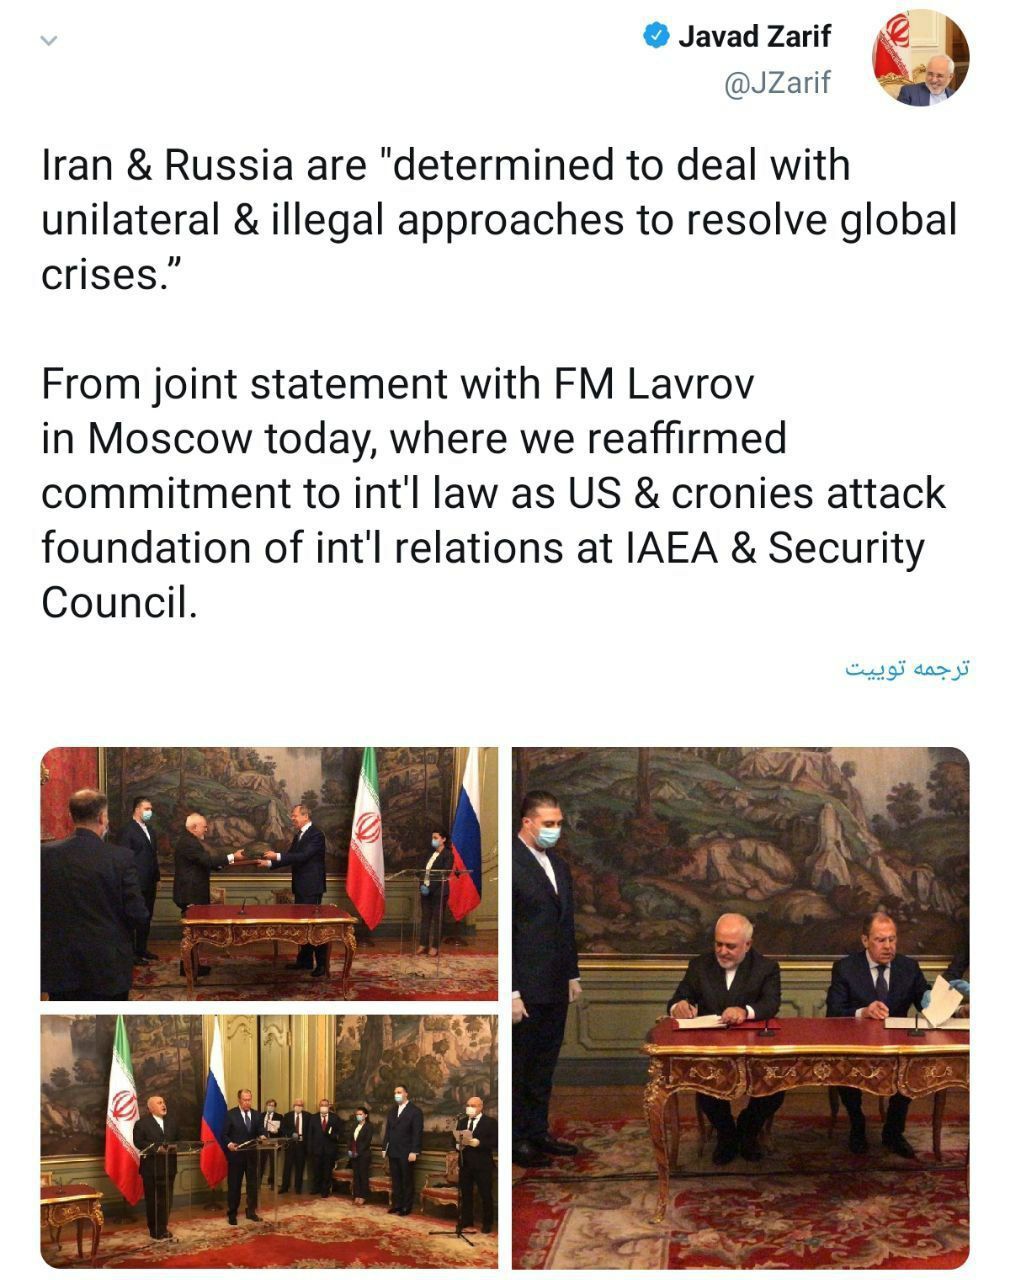 ️ظریف: ایران و روسیه با رویکردهای غیرقانونی یک‌جانبه در حل‌وفصل بحران‌های جهانی مقابله می‌کنند